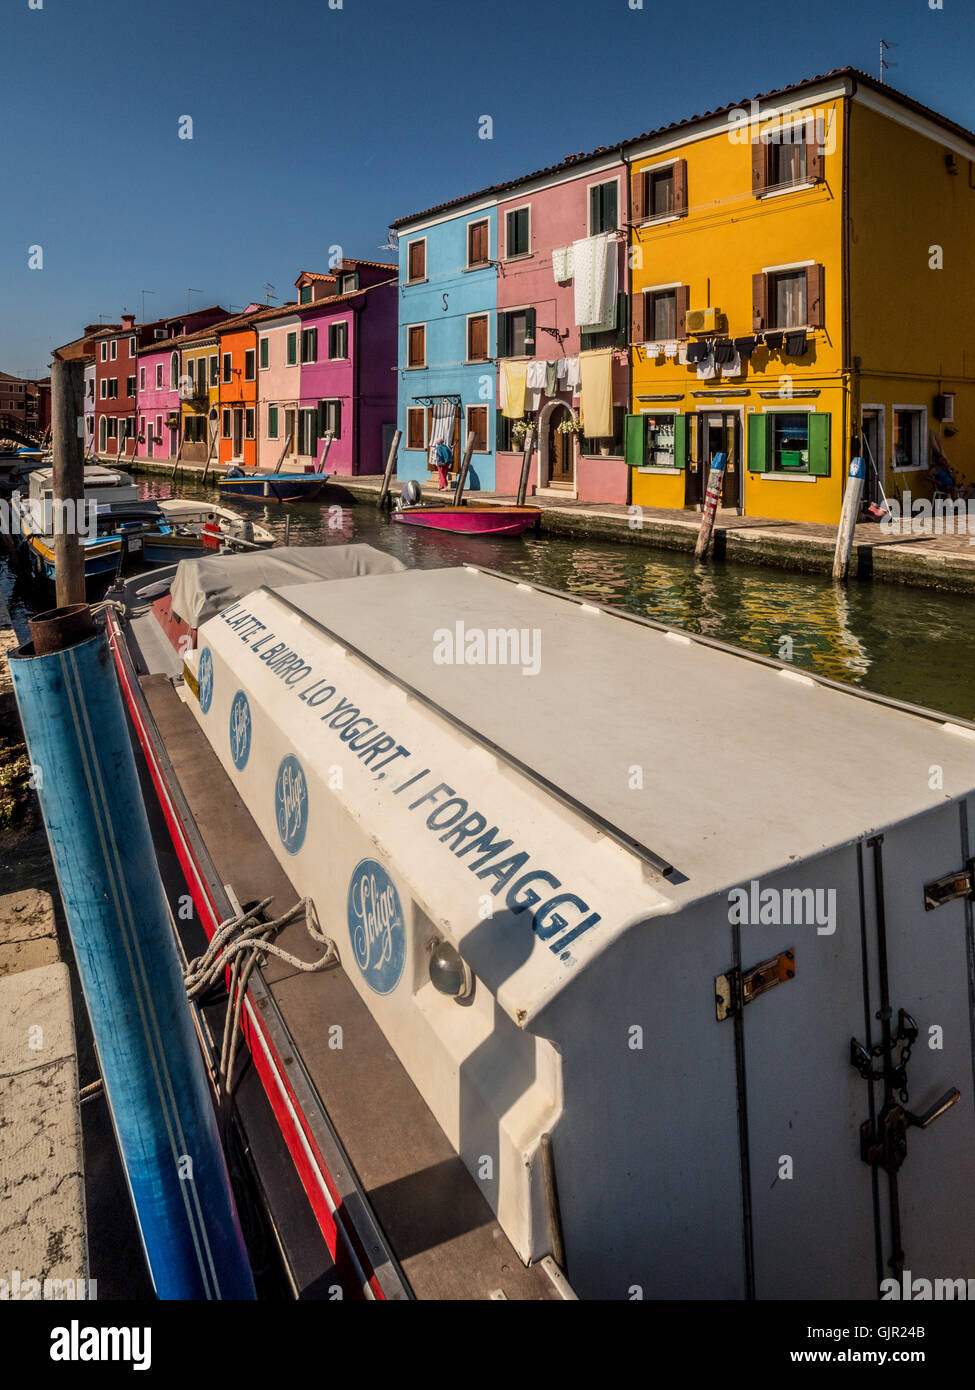 La tradizionale casa dipinta lungo il canale dell'isola di Burano. Venezia, Italia. Foto Stock